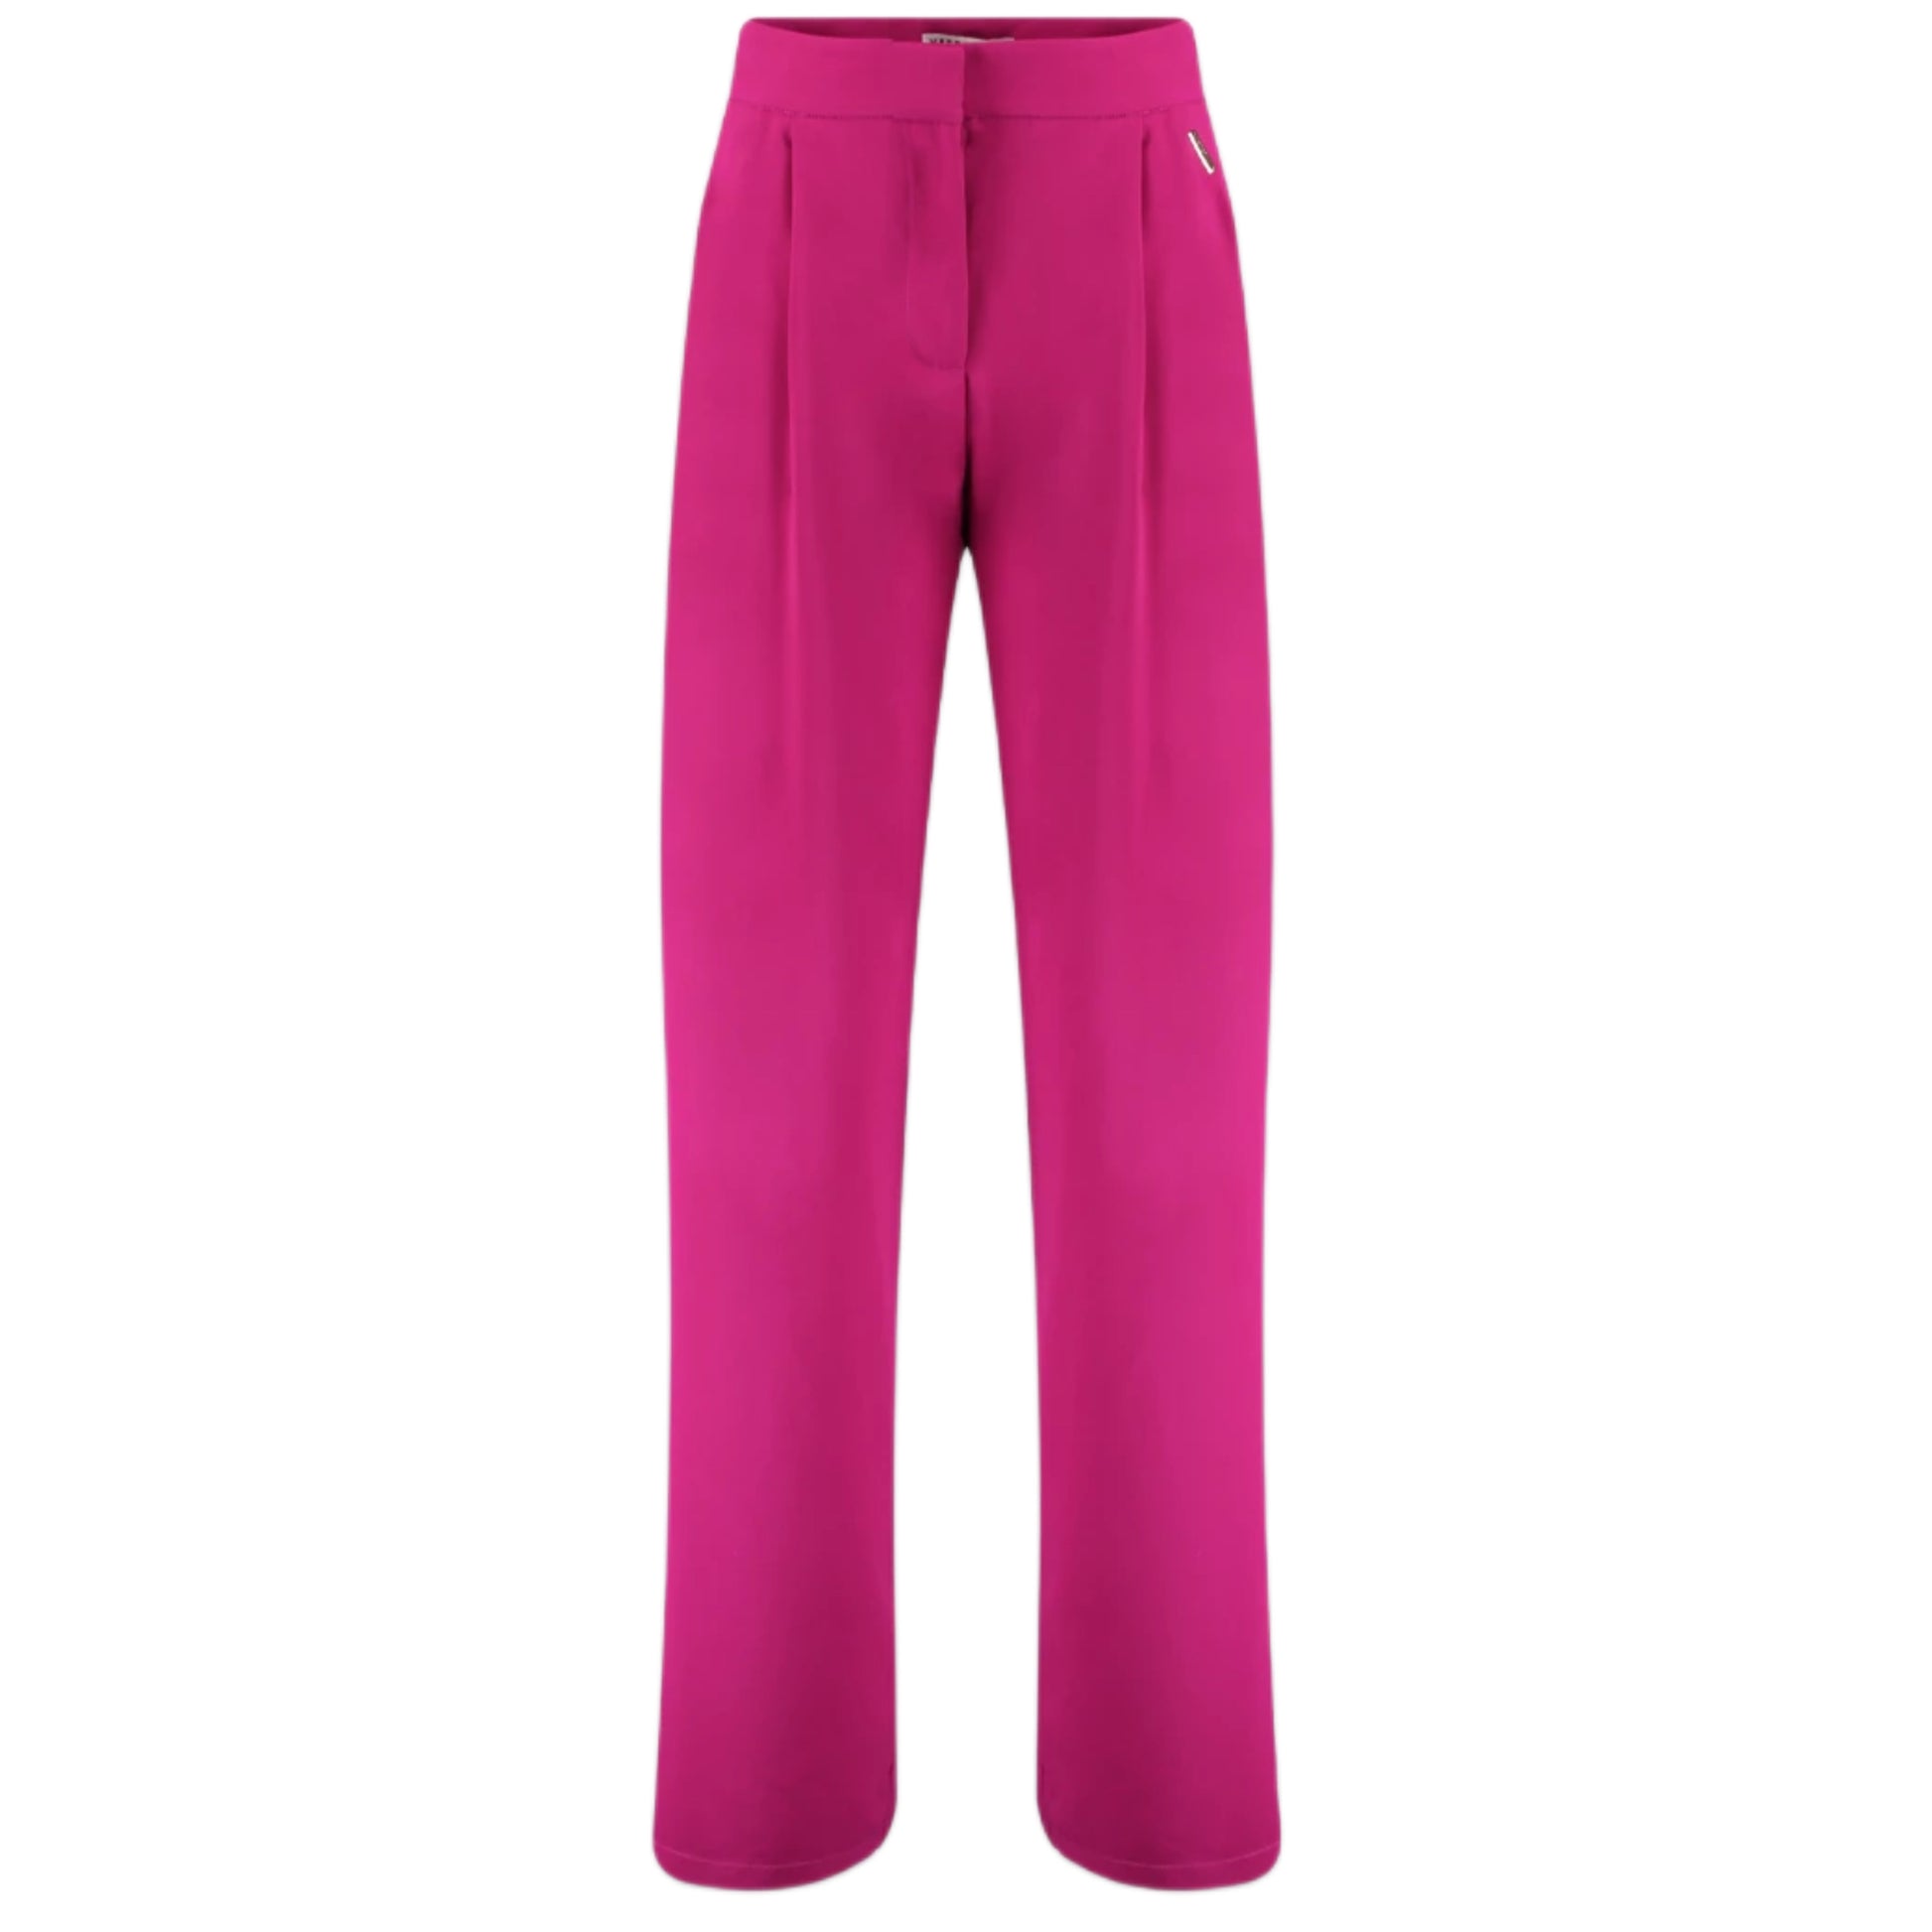 Harper & Yve Pantalon Rosie Fuchsia - Peet kleding